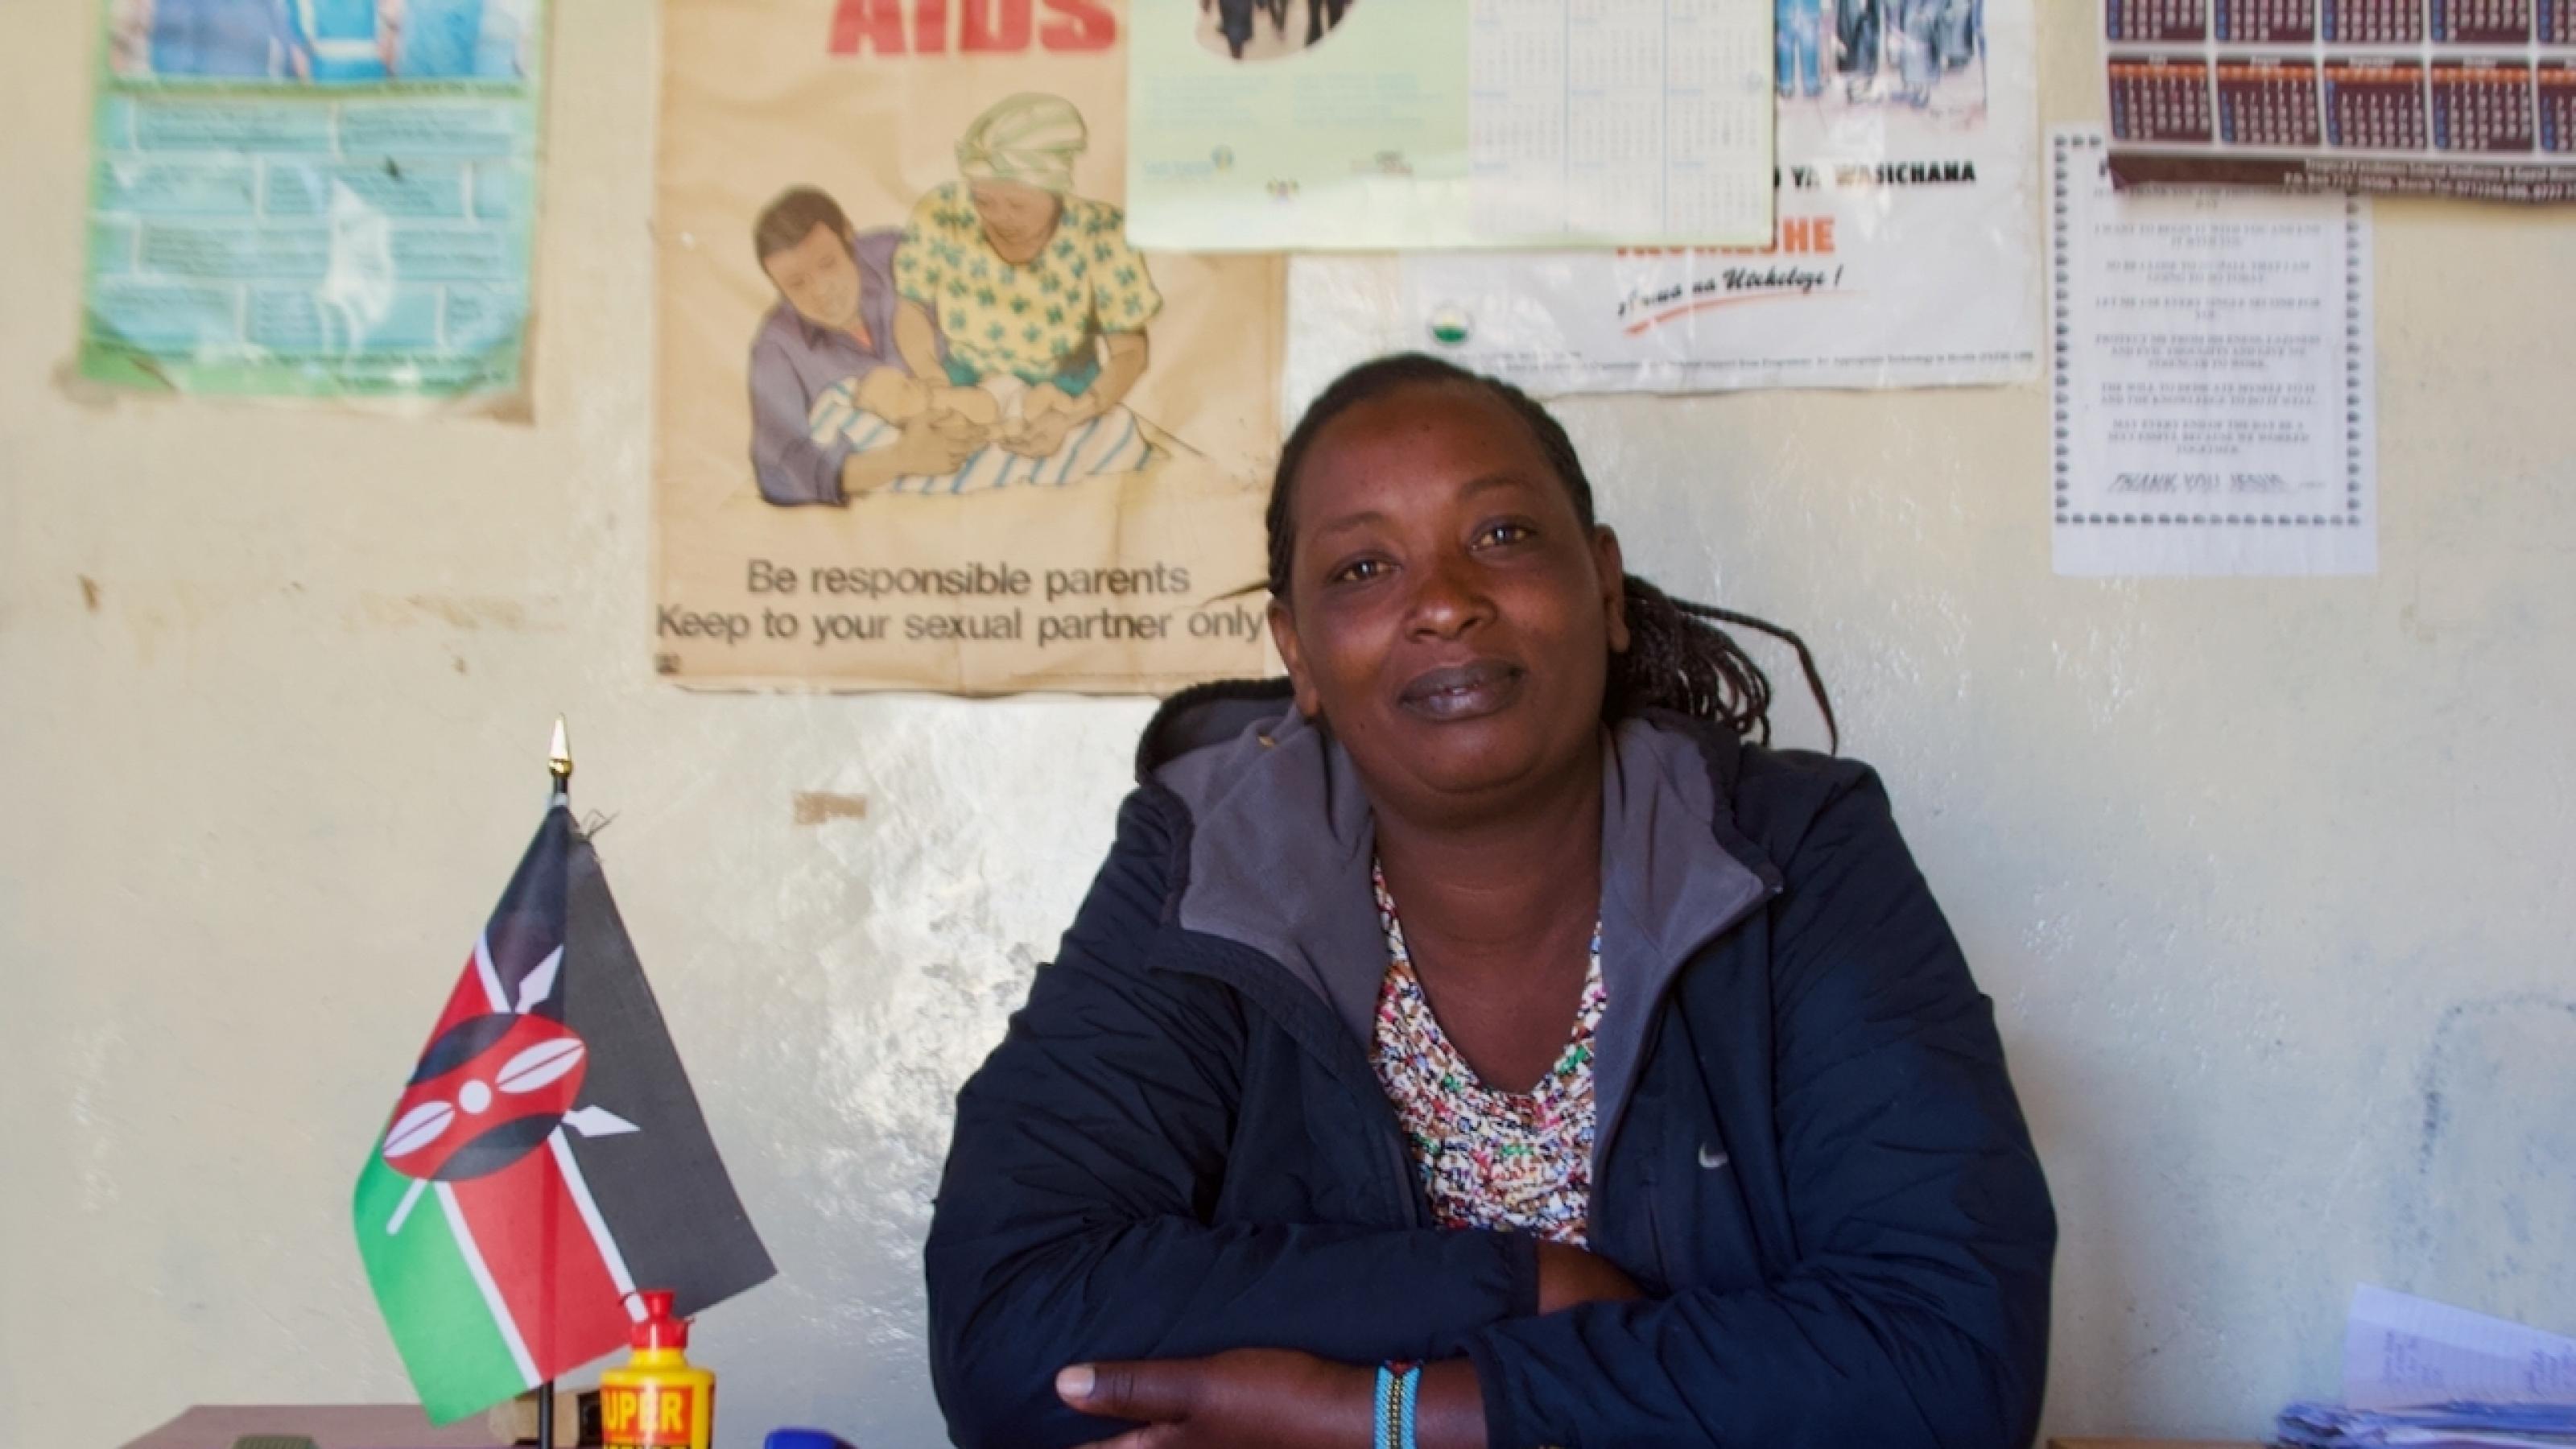 Eine Frau Ende 30 sitzt hinter einem einfachen Schreibtisch, darauf eine kenianische Standflagge, ein Fläschchen mit Tipp-Ex, einige Dokumente. Sie guckt selbstbewusst in die Kamera. An der Wand einige Poster zur Aufklärung über Frauenrechte und Ähnliches.